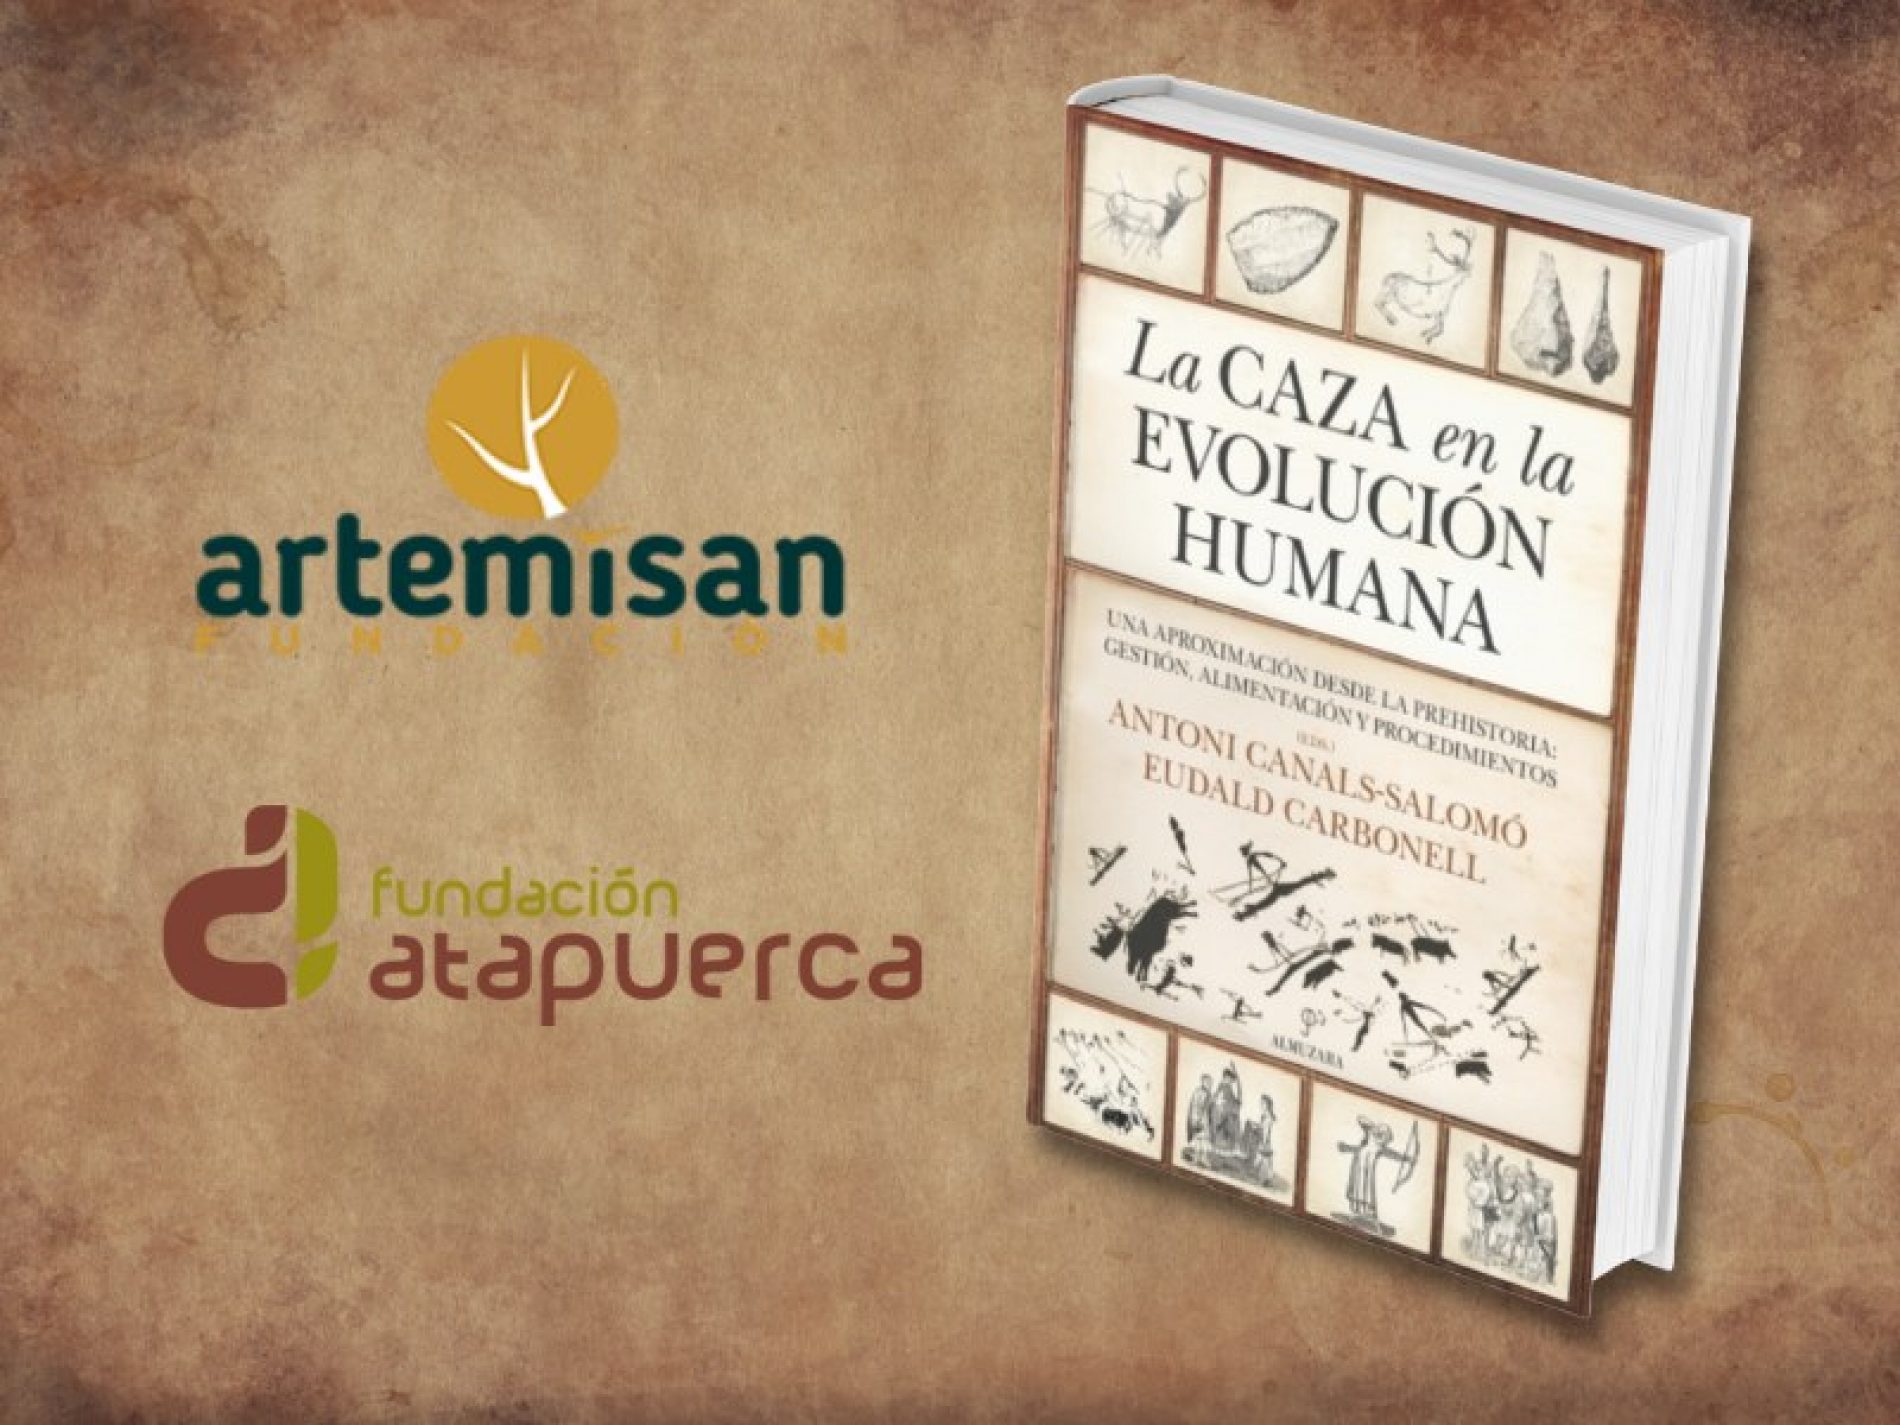 Sale a la venta el libro ‘La caza en la evolución humana’, de Fundación Artemisan y Fundación Atapuerca